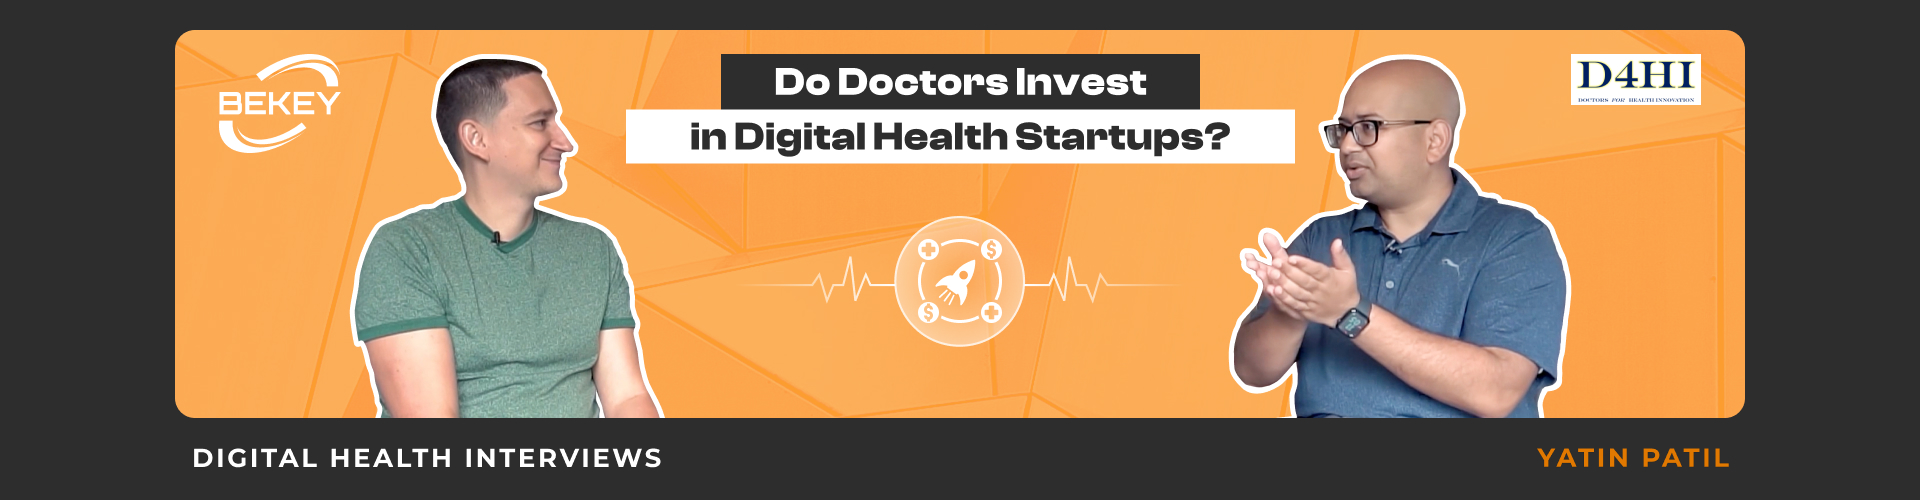 Do Doctors Invest in Digital Health Startups? Digital Health Interviews: Yatin Patil - image